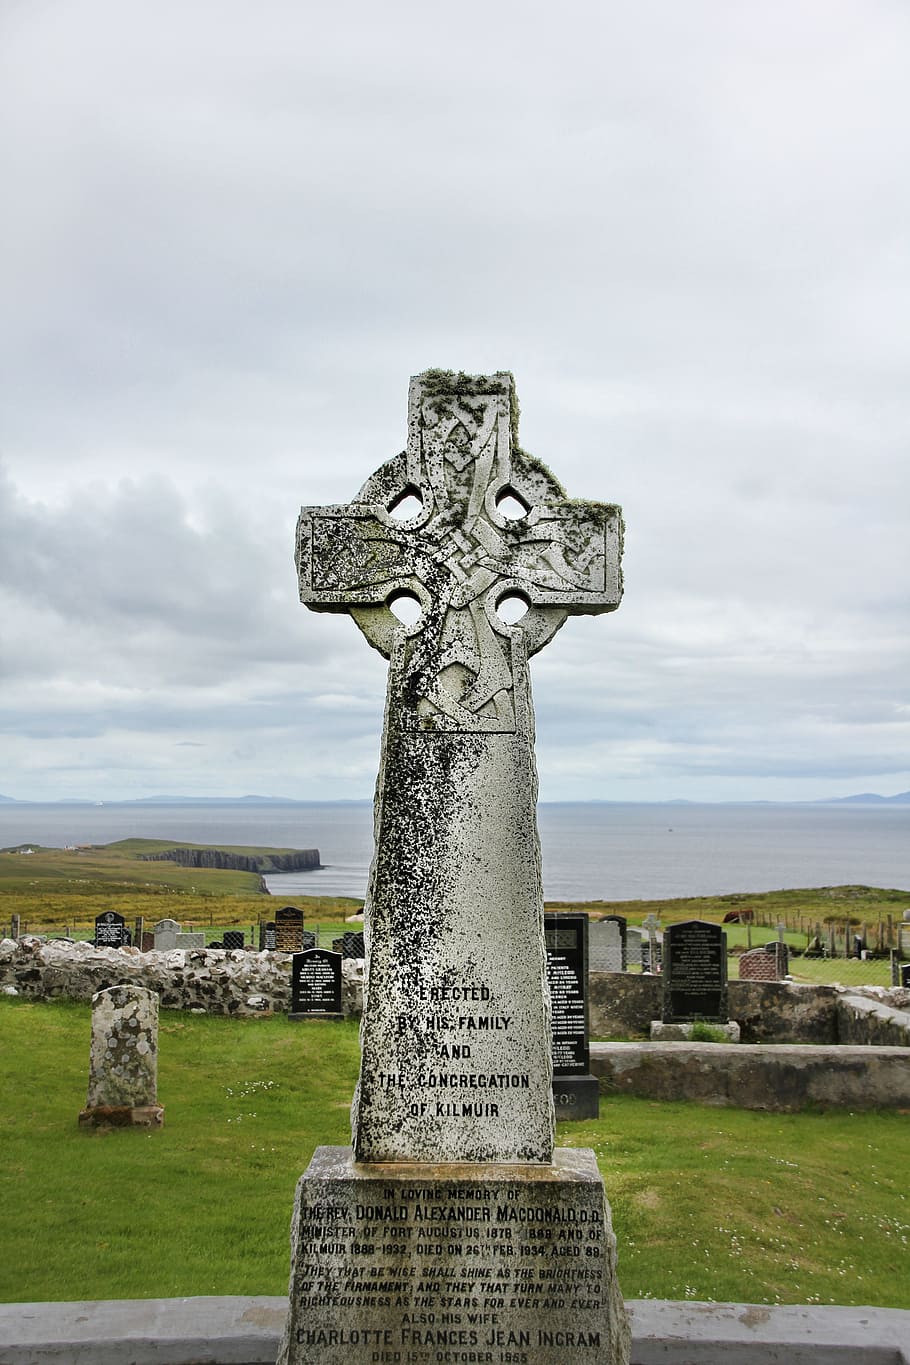 묘비, 켈트족의, 스코틀랜드, 스코틀랜드의, 십자가, 늙은, 묘지, 묘, 돌이 많은, 역사적으로